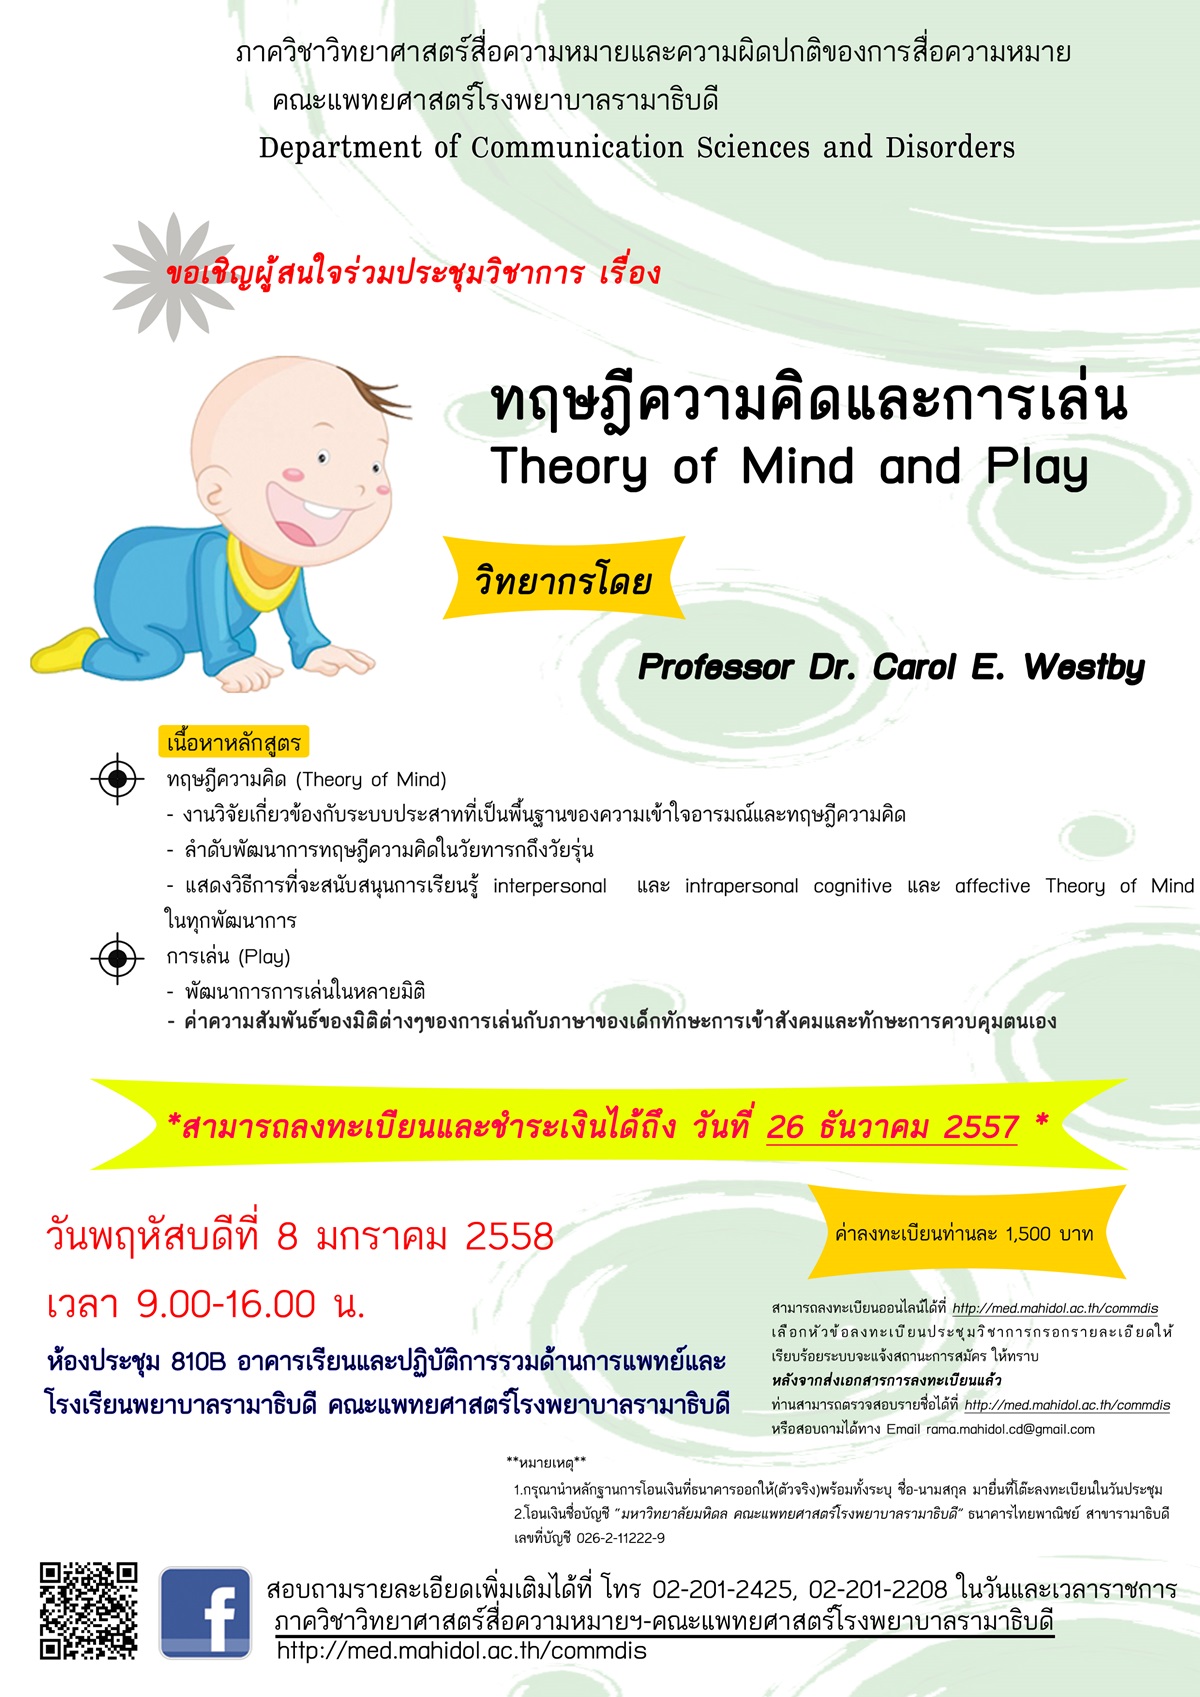 ขอเชิญเข้าร่วมประชุมวิชาการ "Theory of Mind and Play"